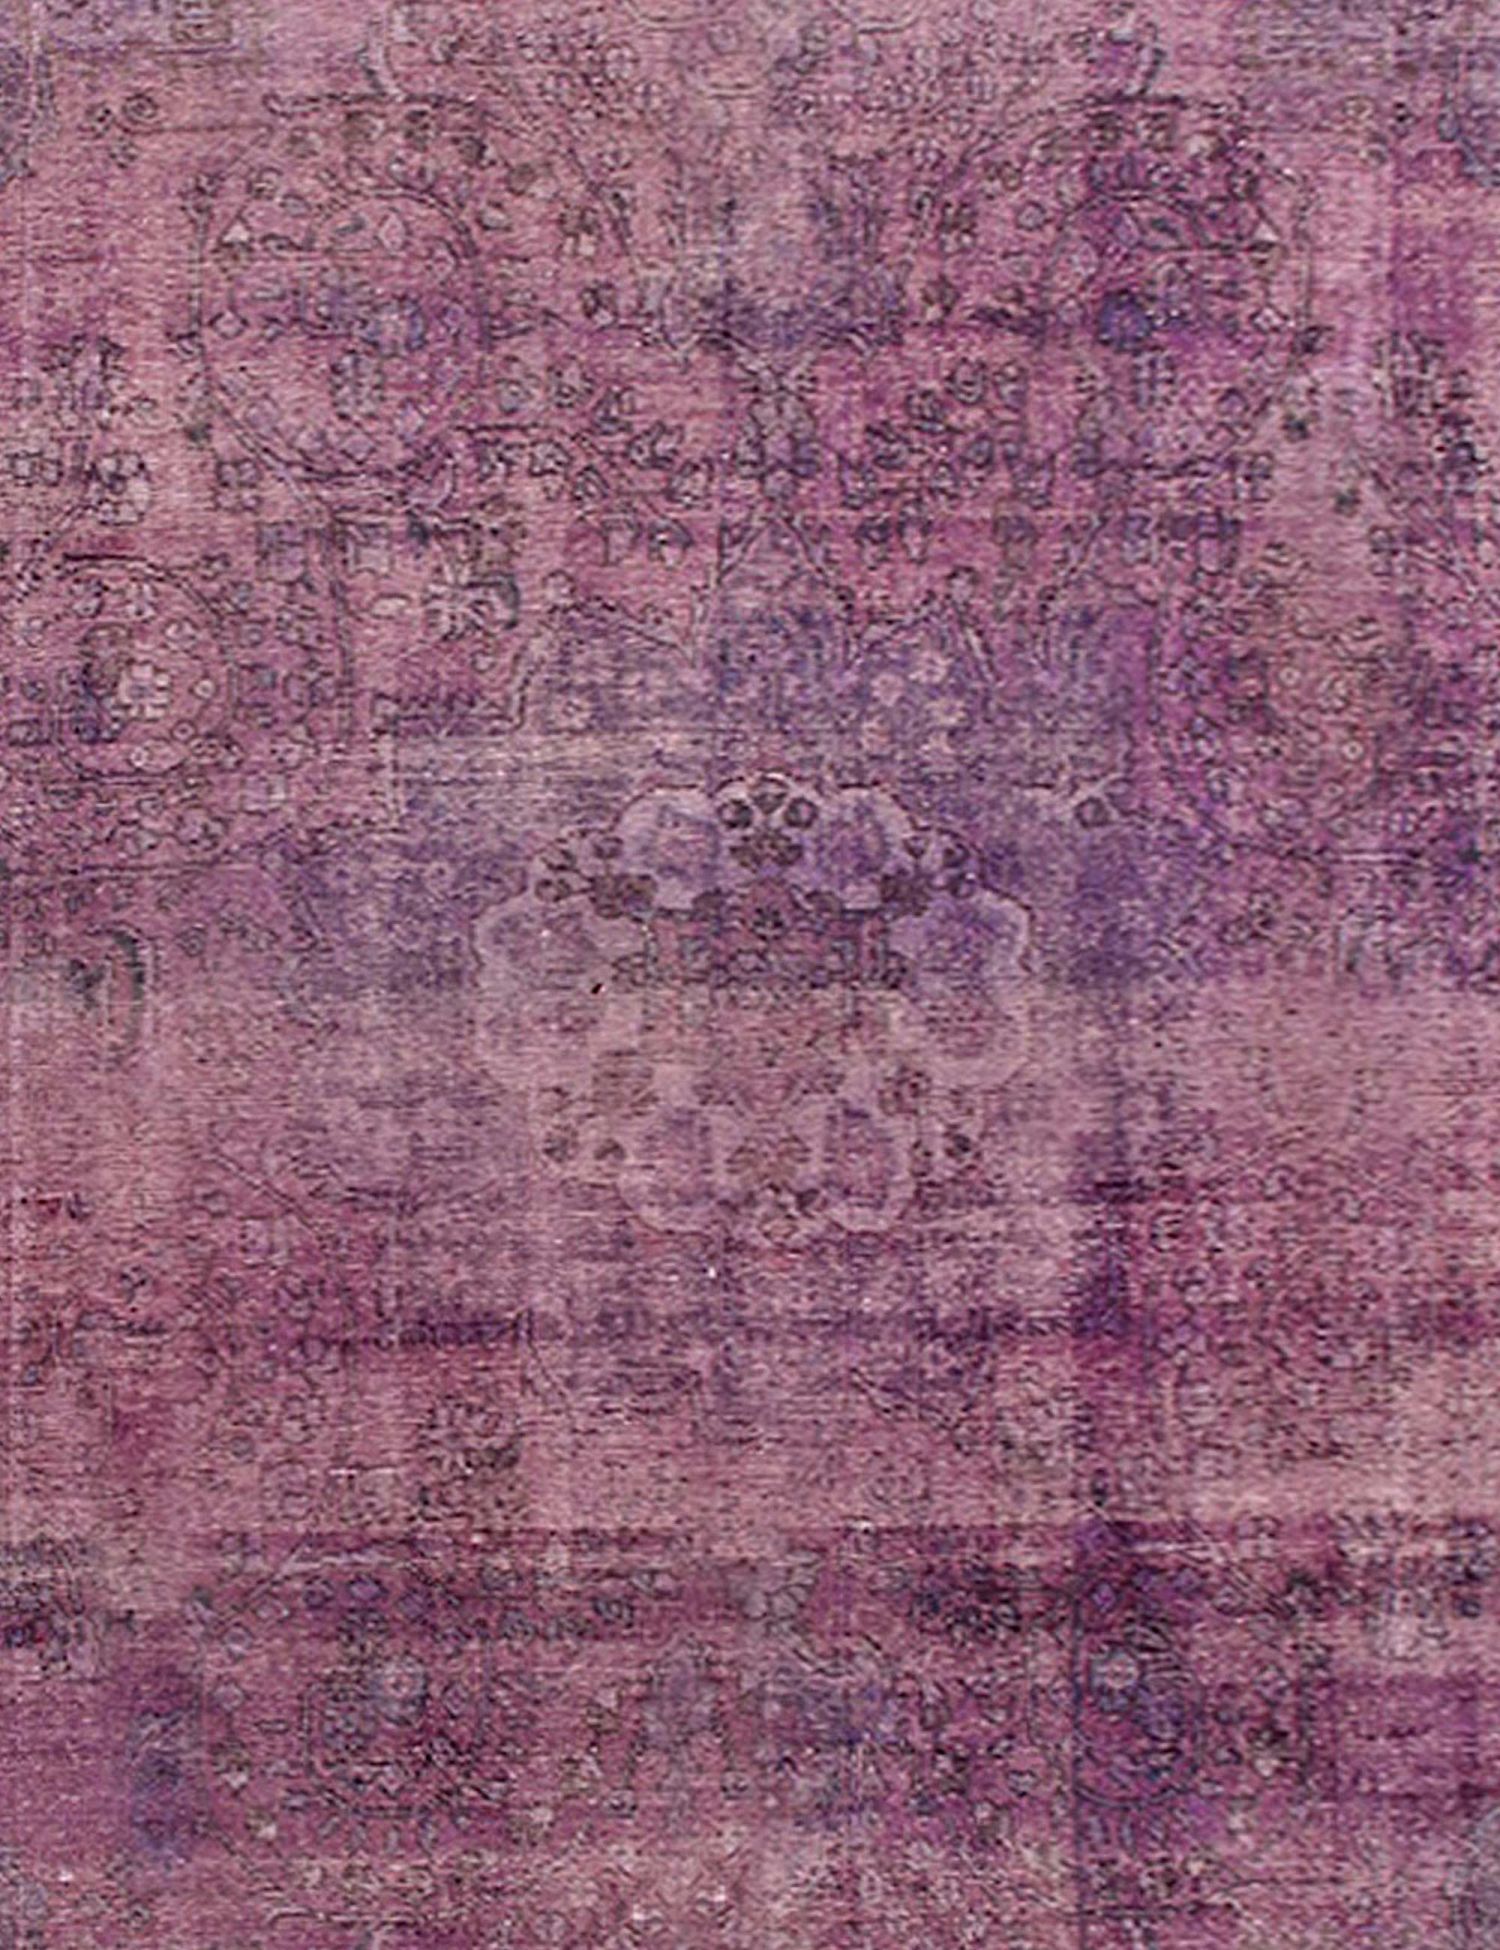 Persischer Vintage Teppich  lila <br/>285 x 285 cm